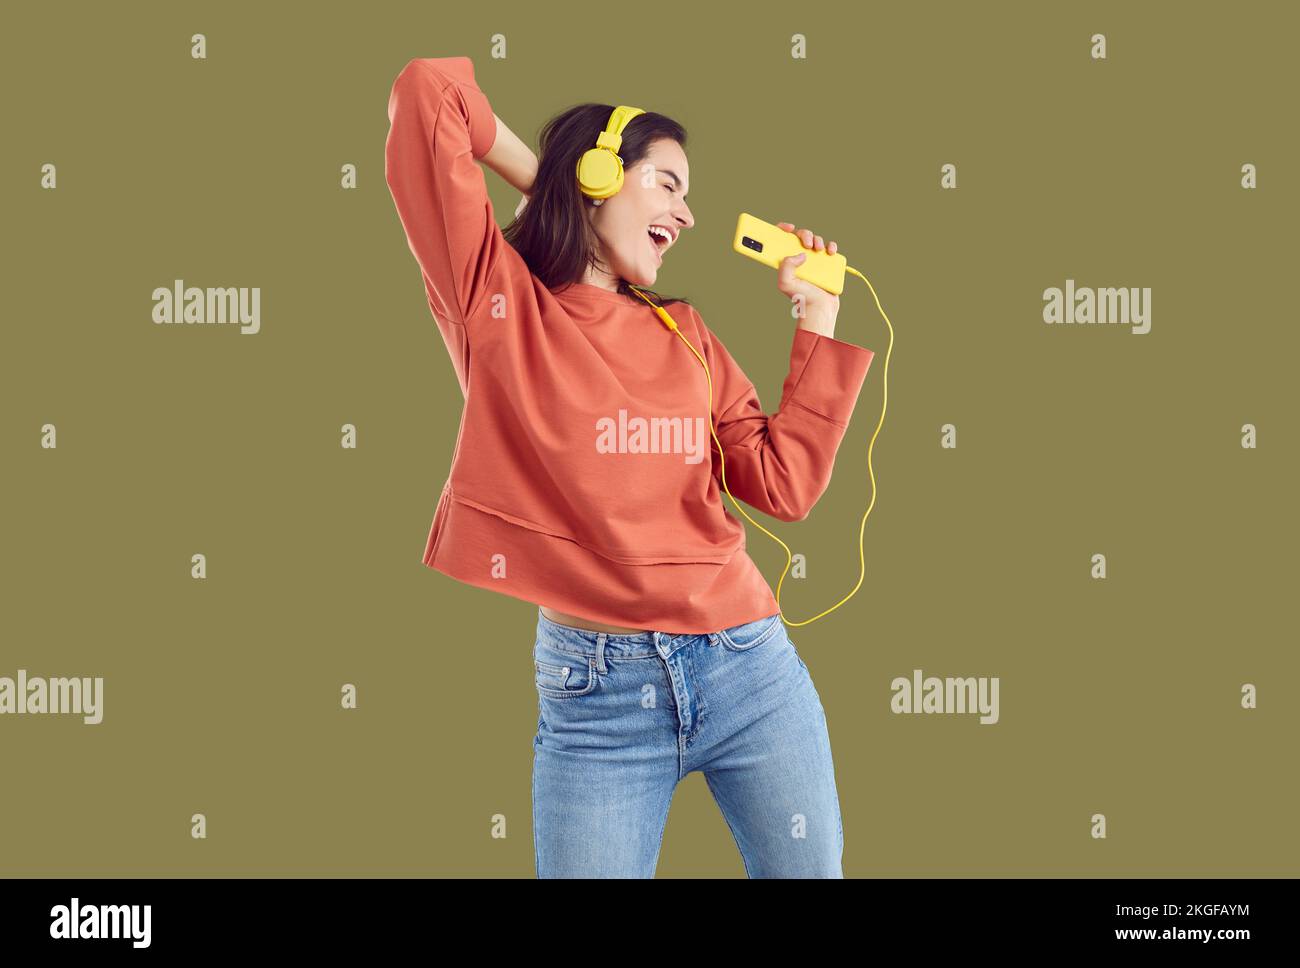 Mujer morena con sudadera roja y jeand escuchando música con el smartphone amarillo y los auriculares. Foto de stock